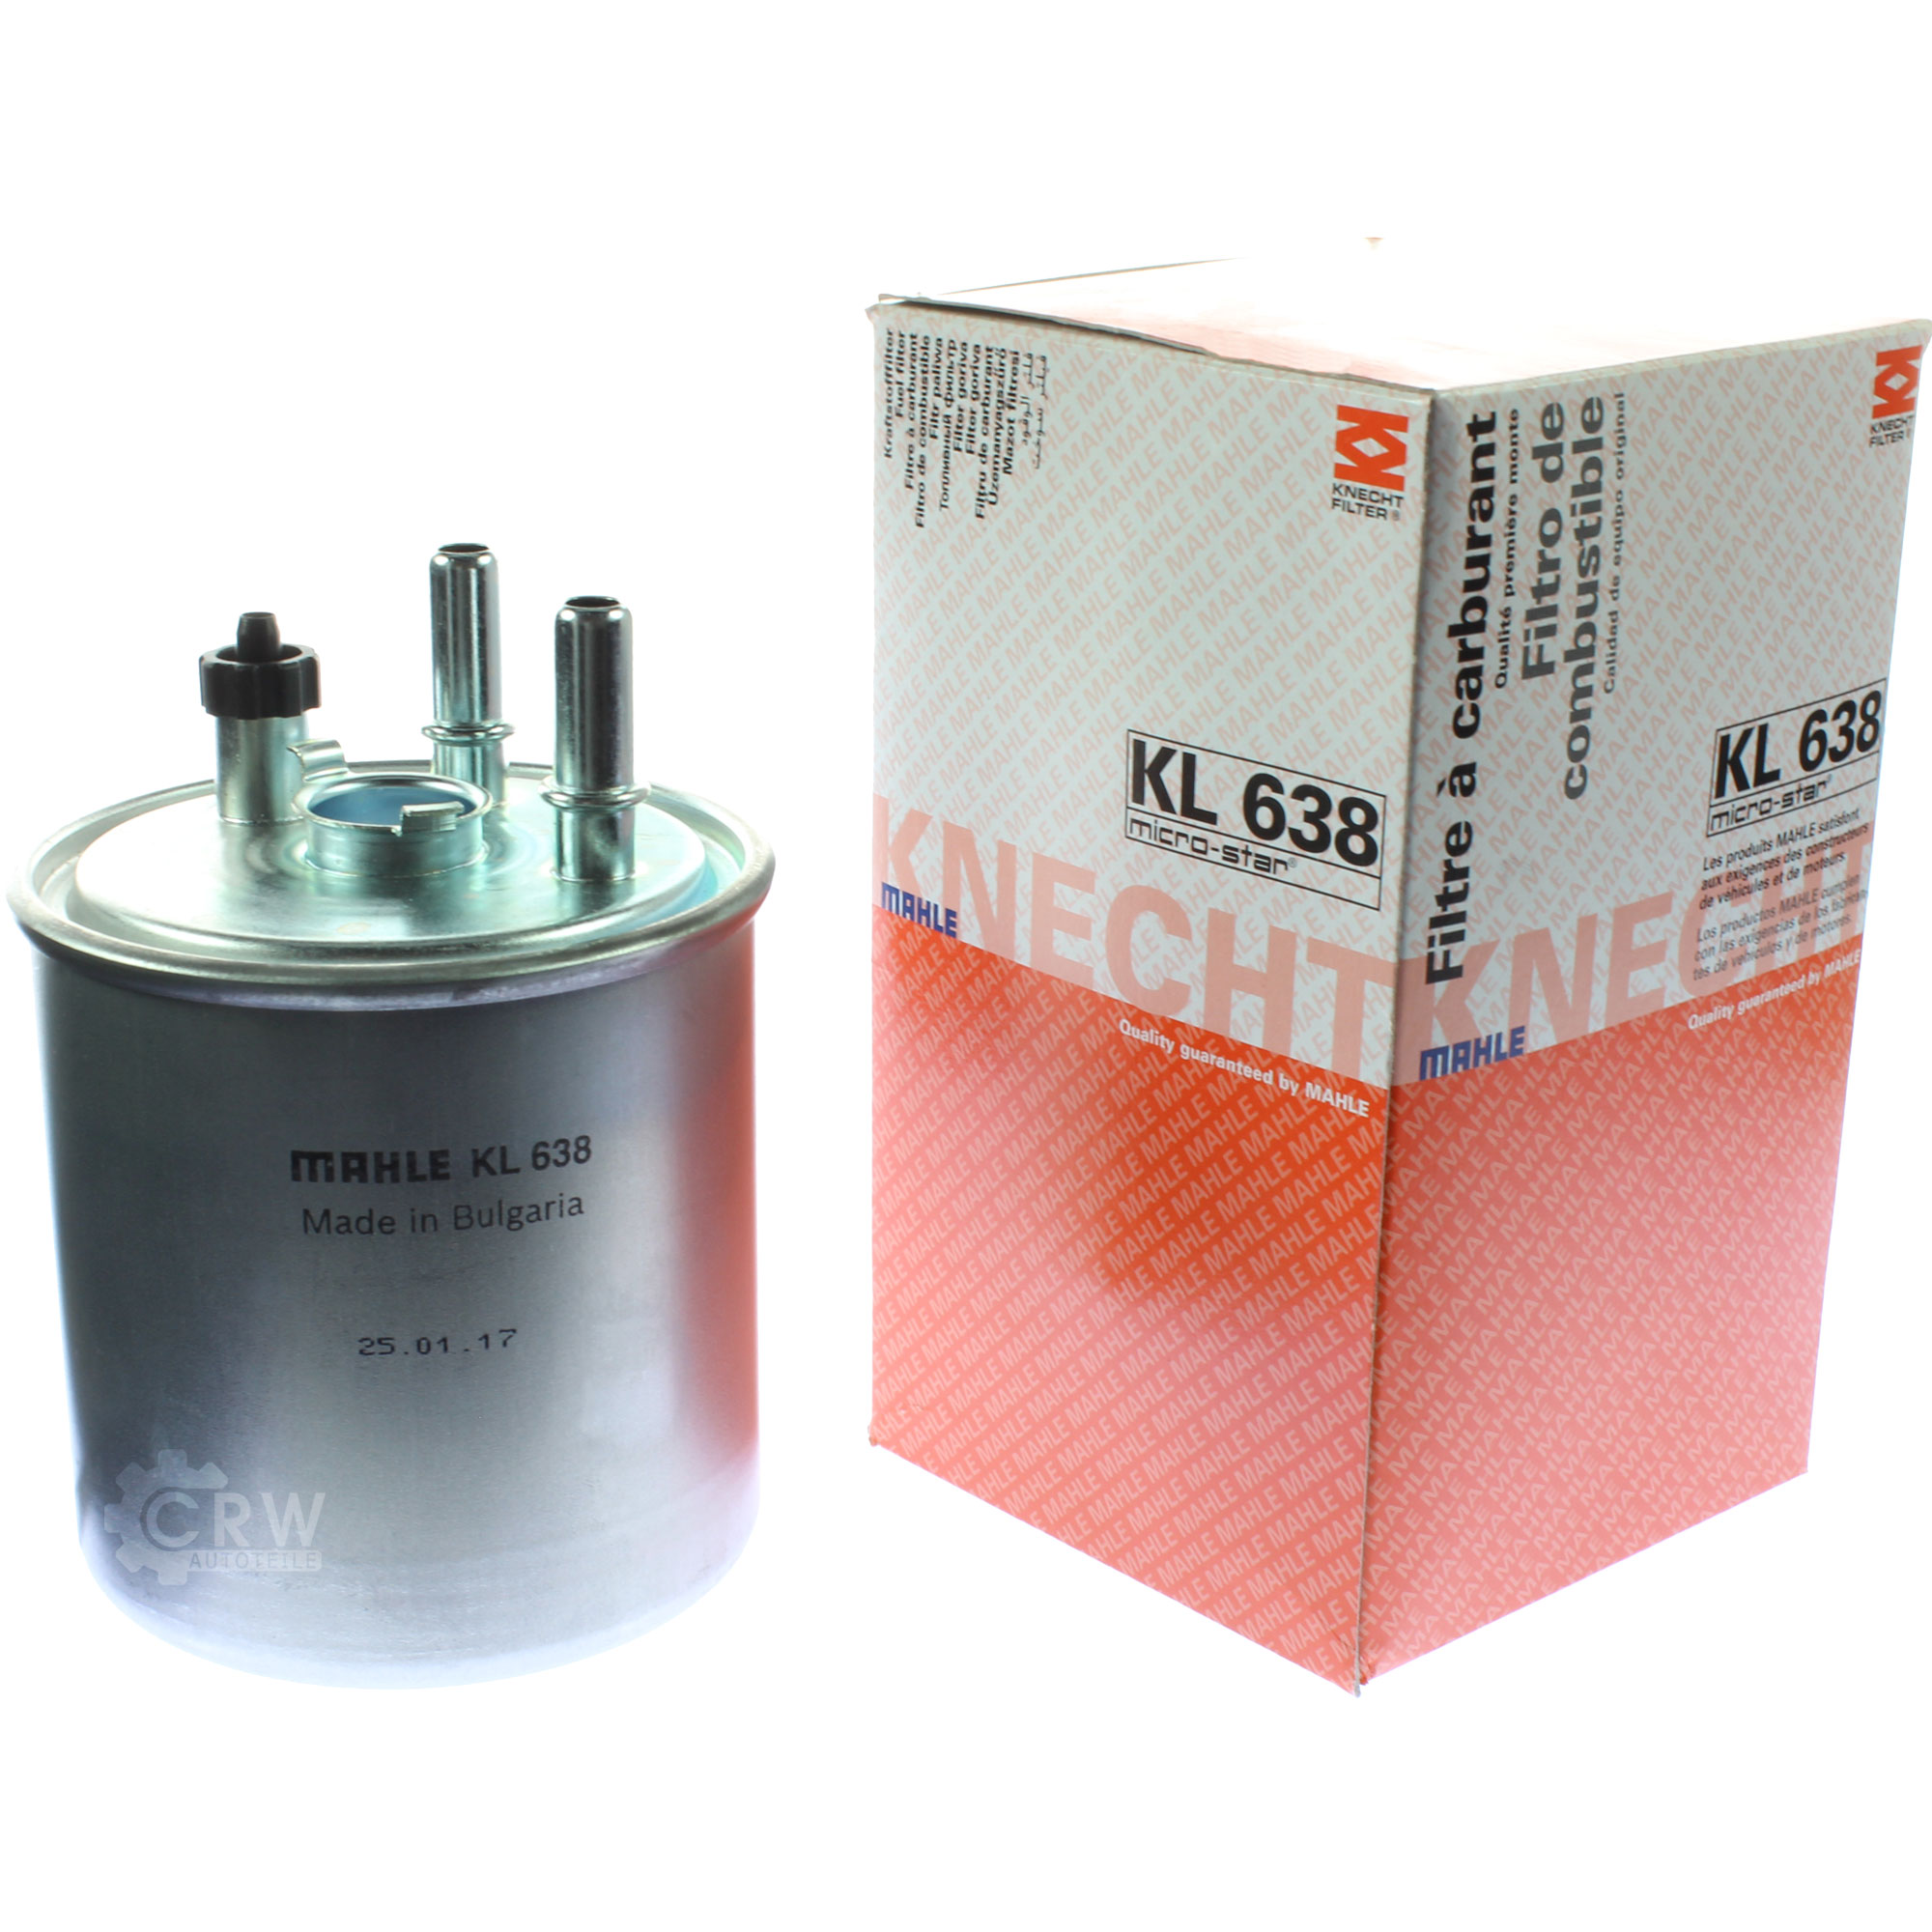 MAHLE / KNECHT KL 638 Kraftstofffilter Filter Fuel